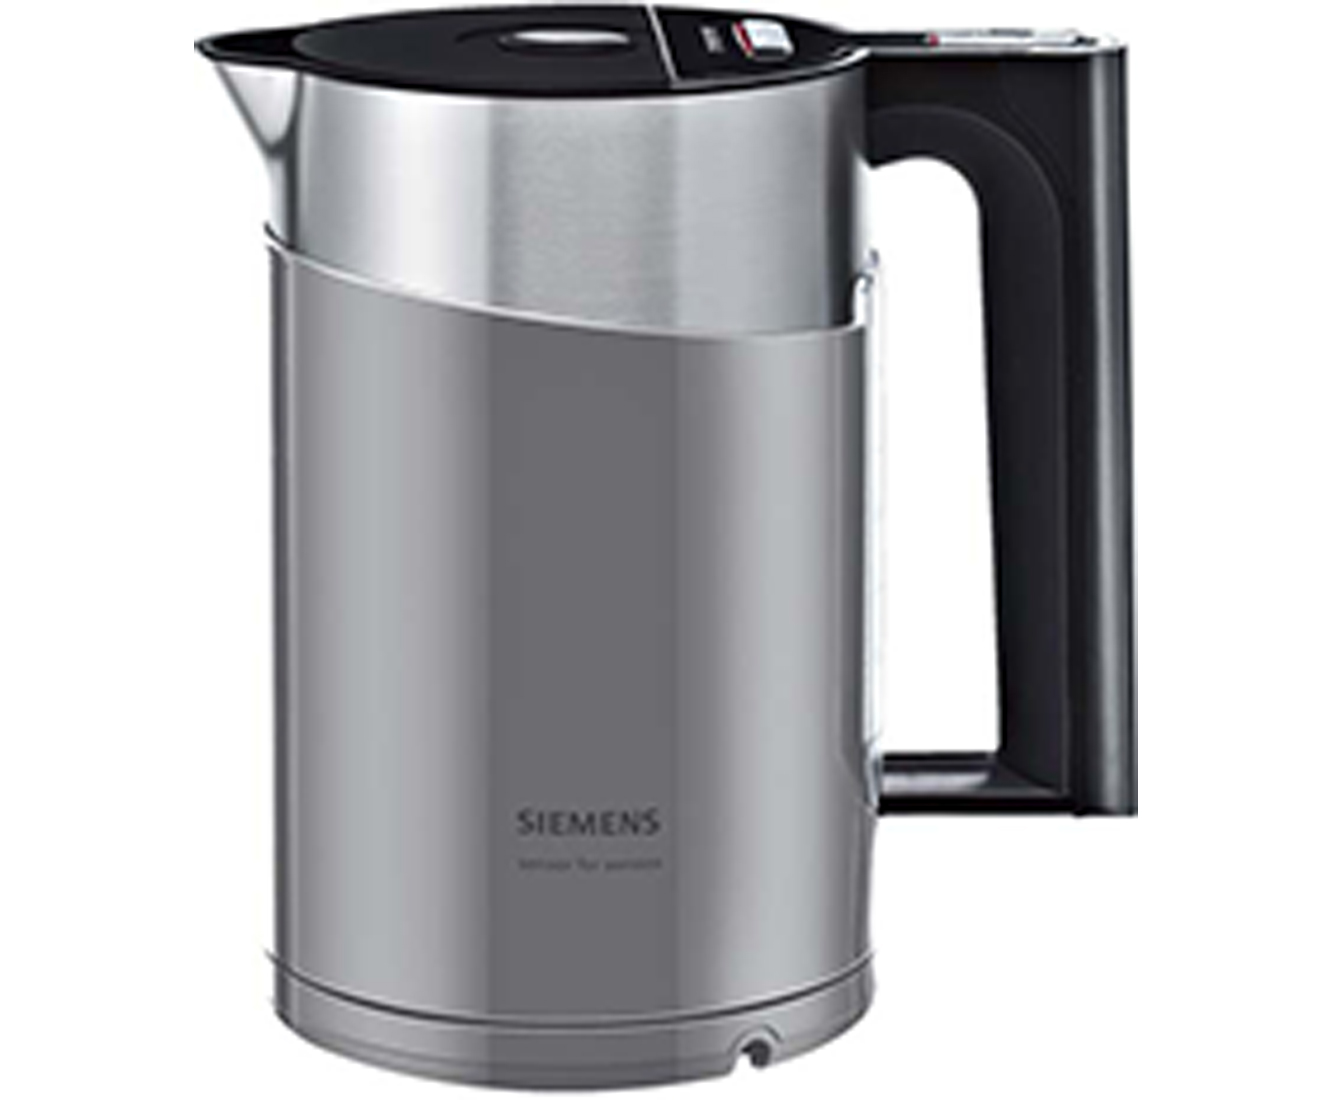 Siemens TW86105P Wasserkocher & Toaster - Grau